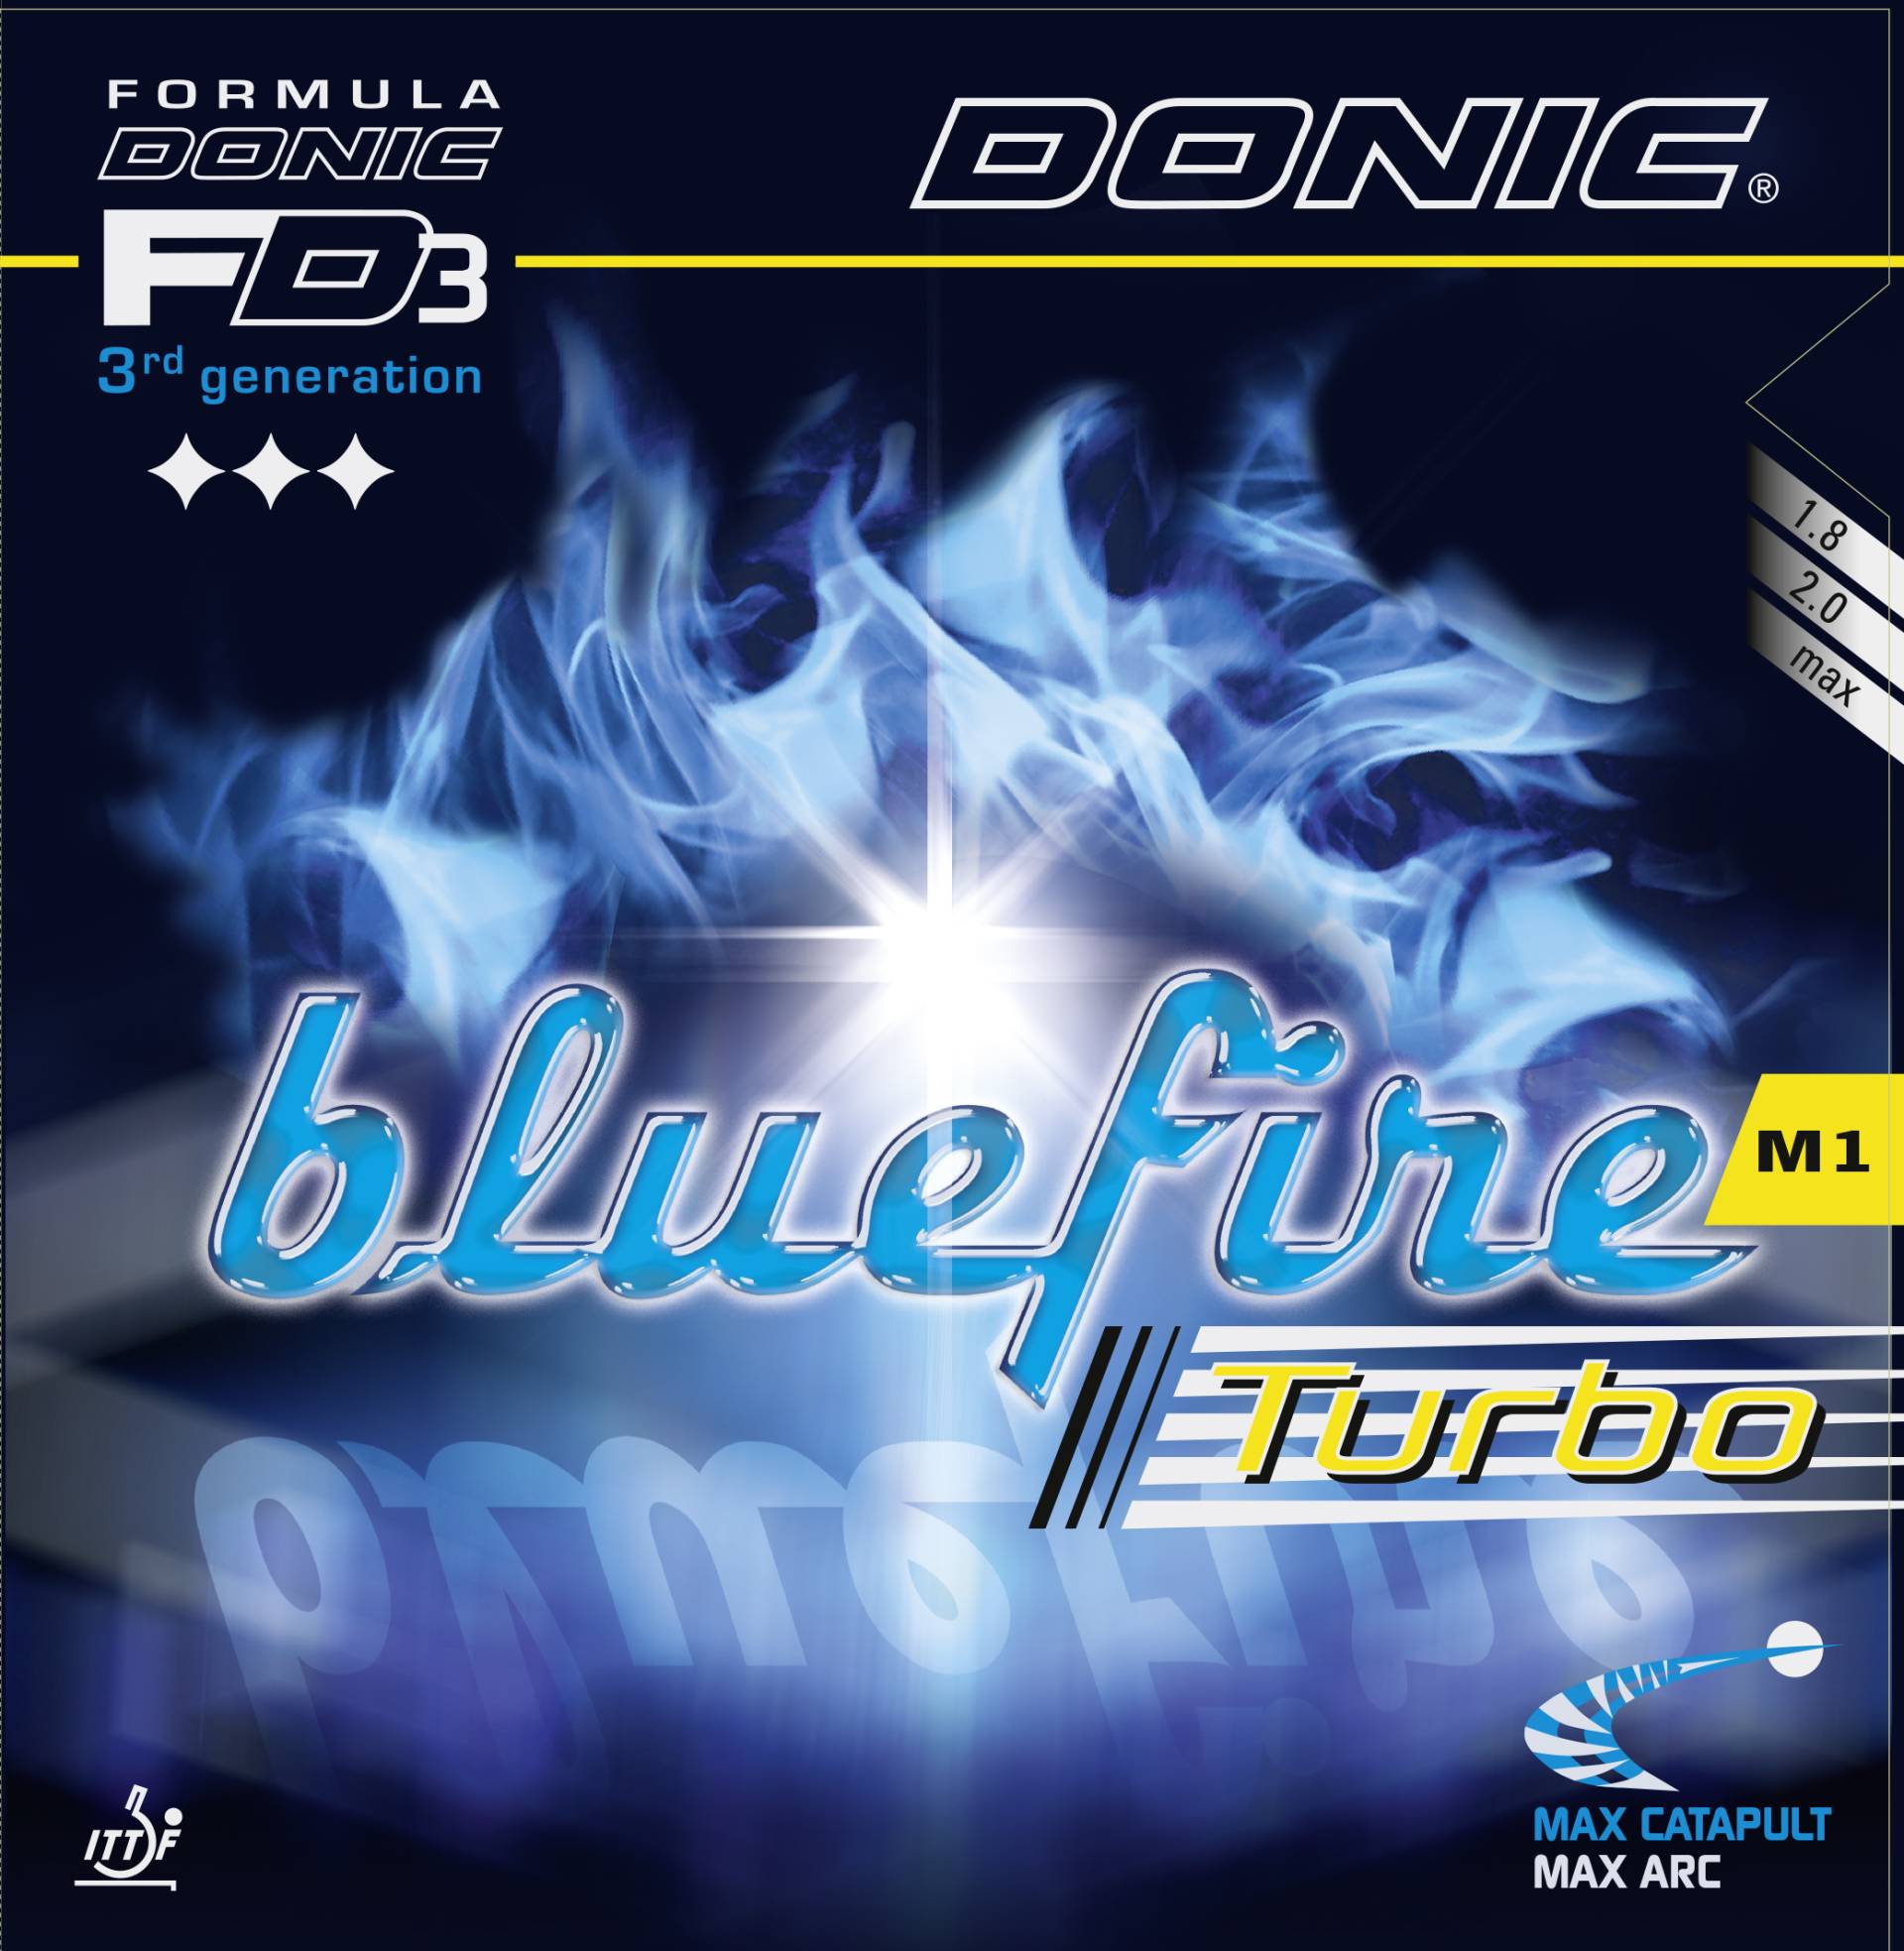 DONIC BLUEFIRE M1 TURBO - Empfehung für den Spielertyp OFFENSIV SPEED von Donic